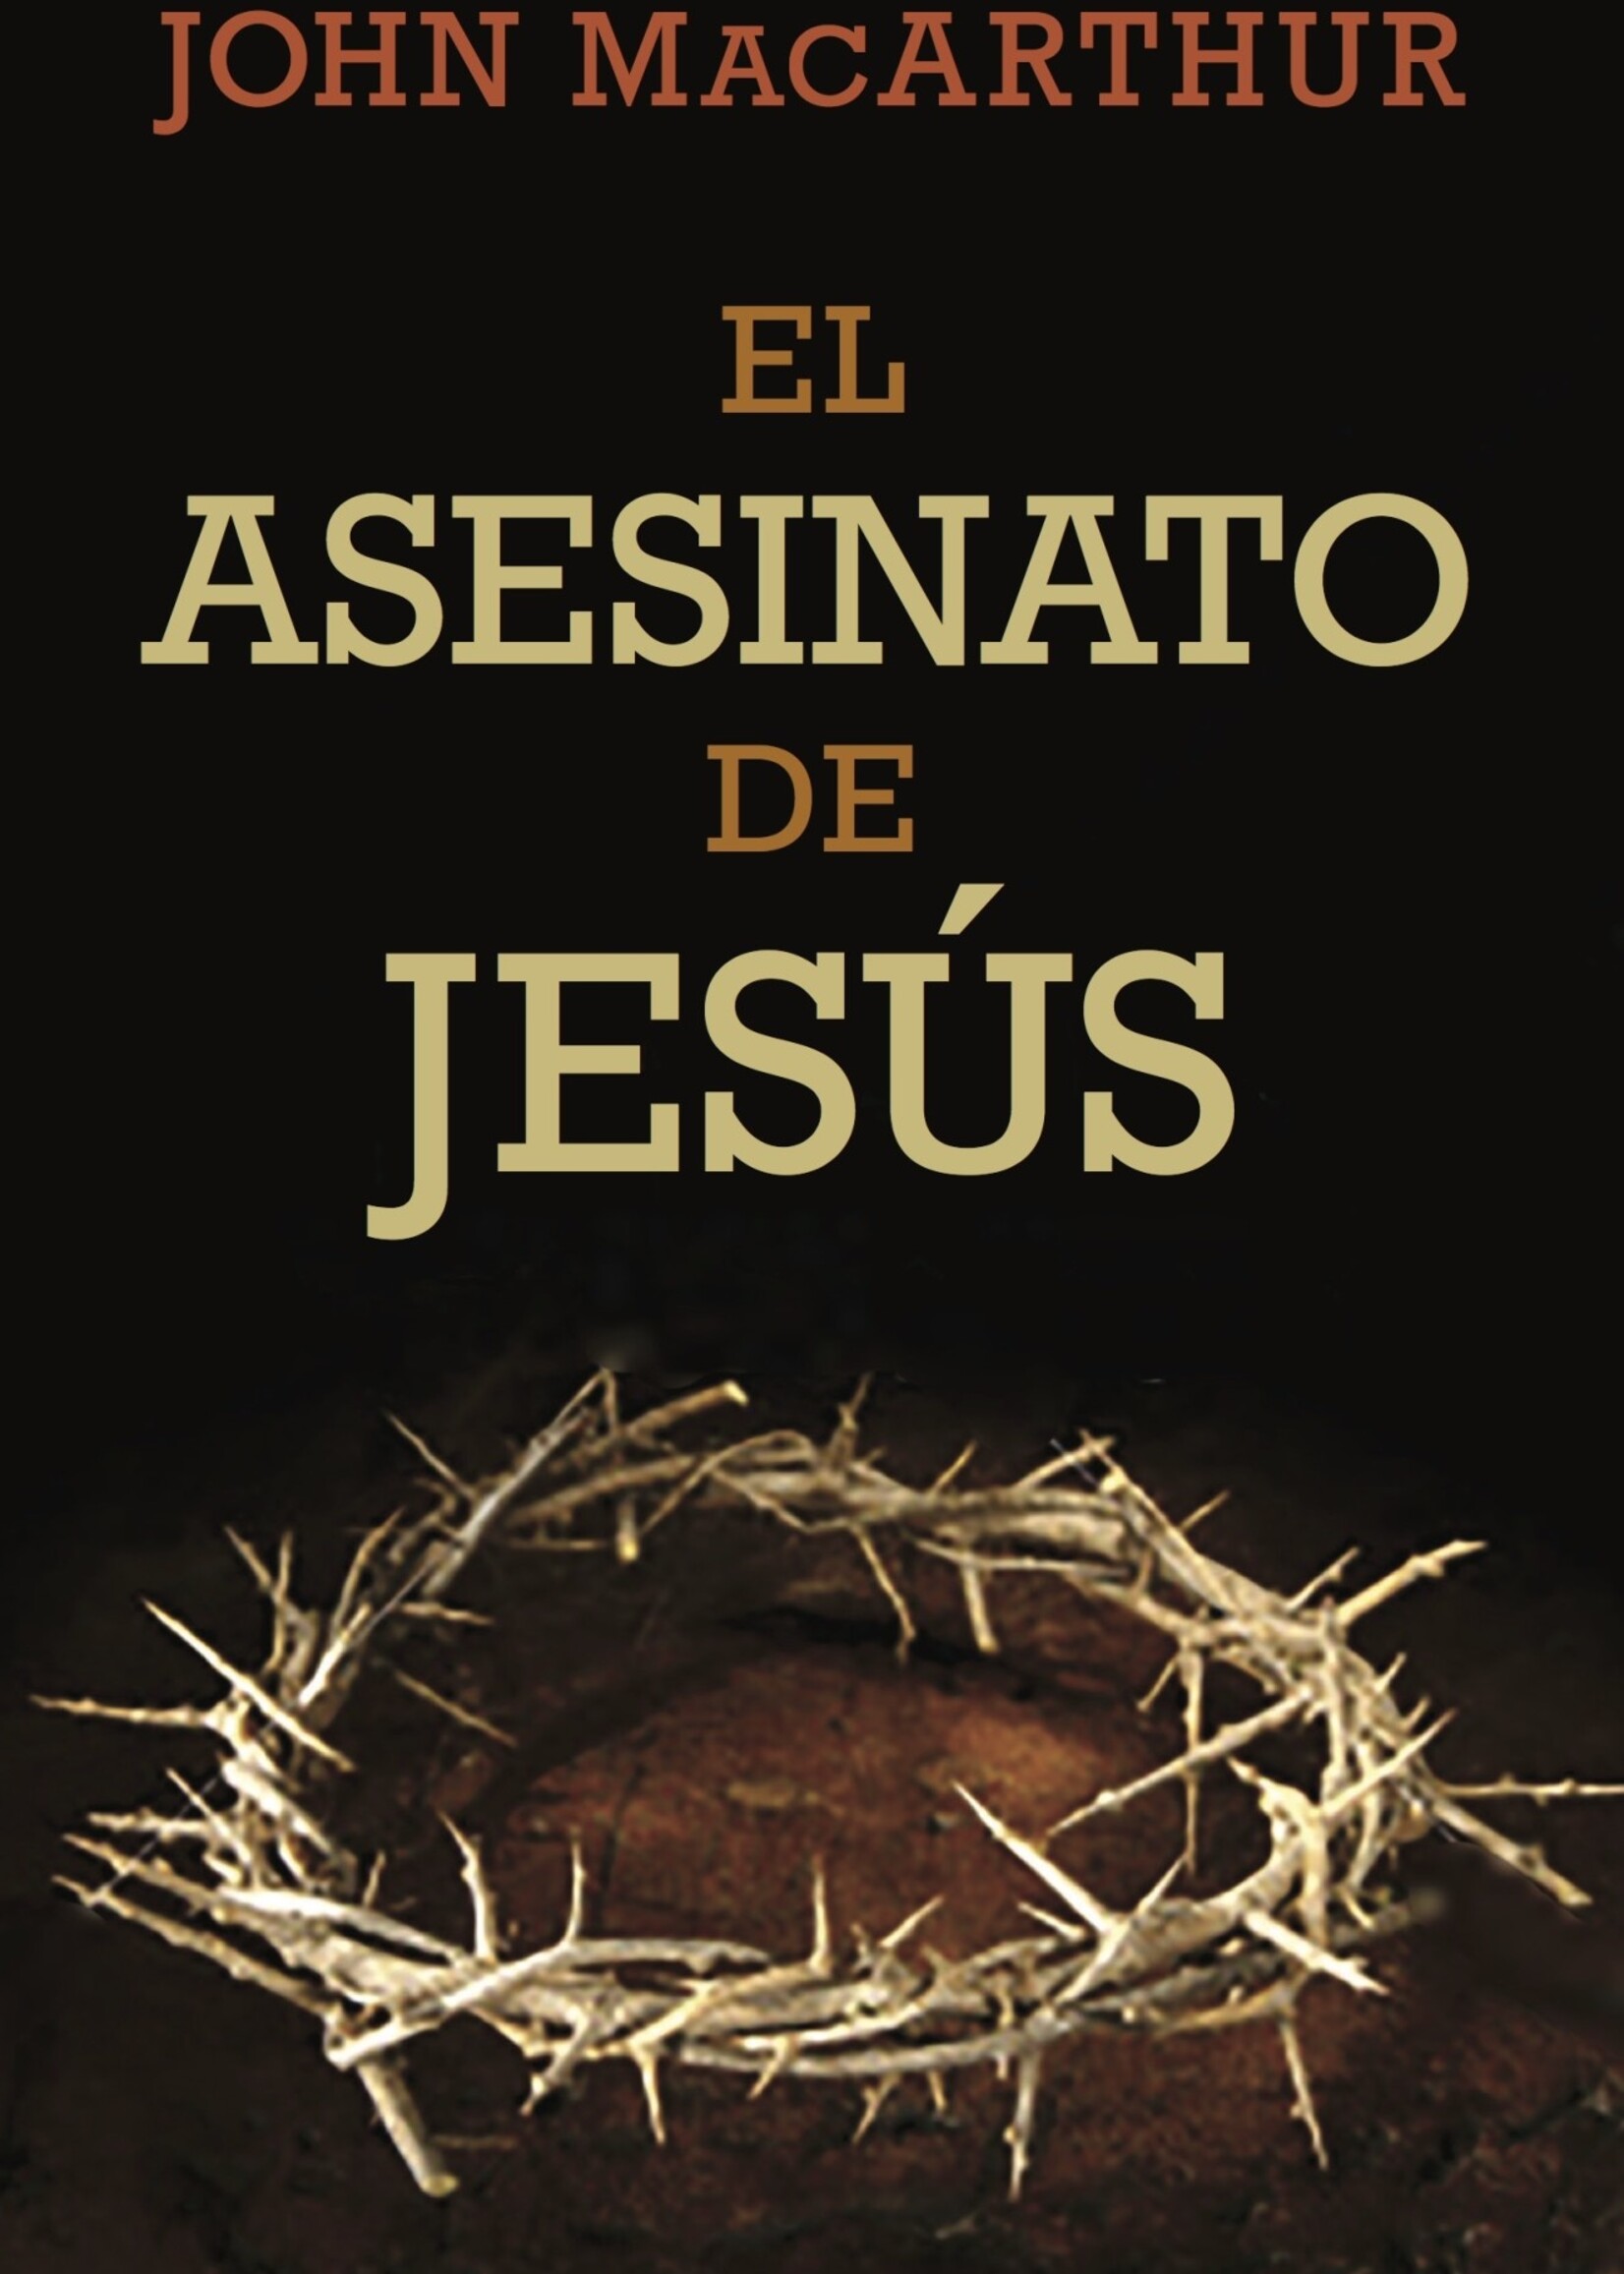 PORTAVOZ EL ASESINATO DE JESUS